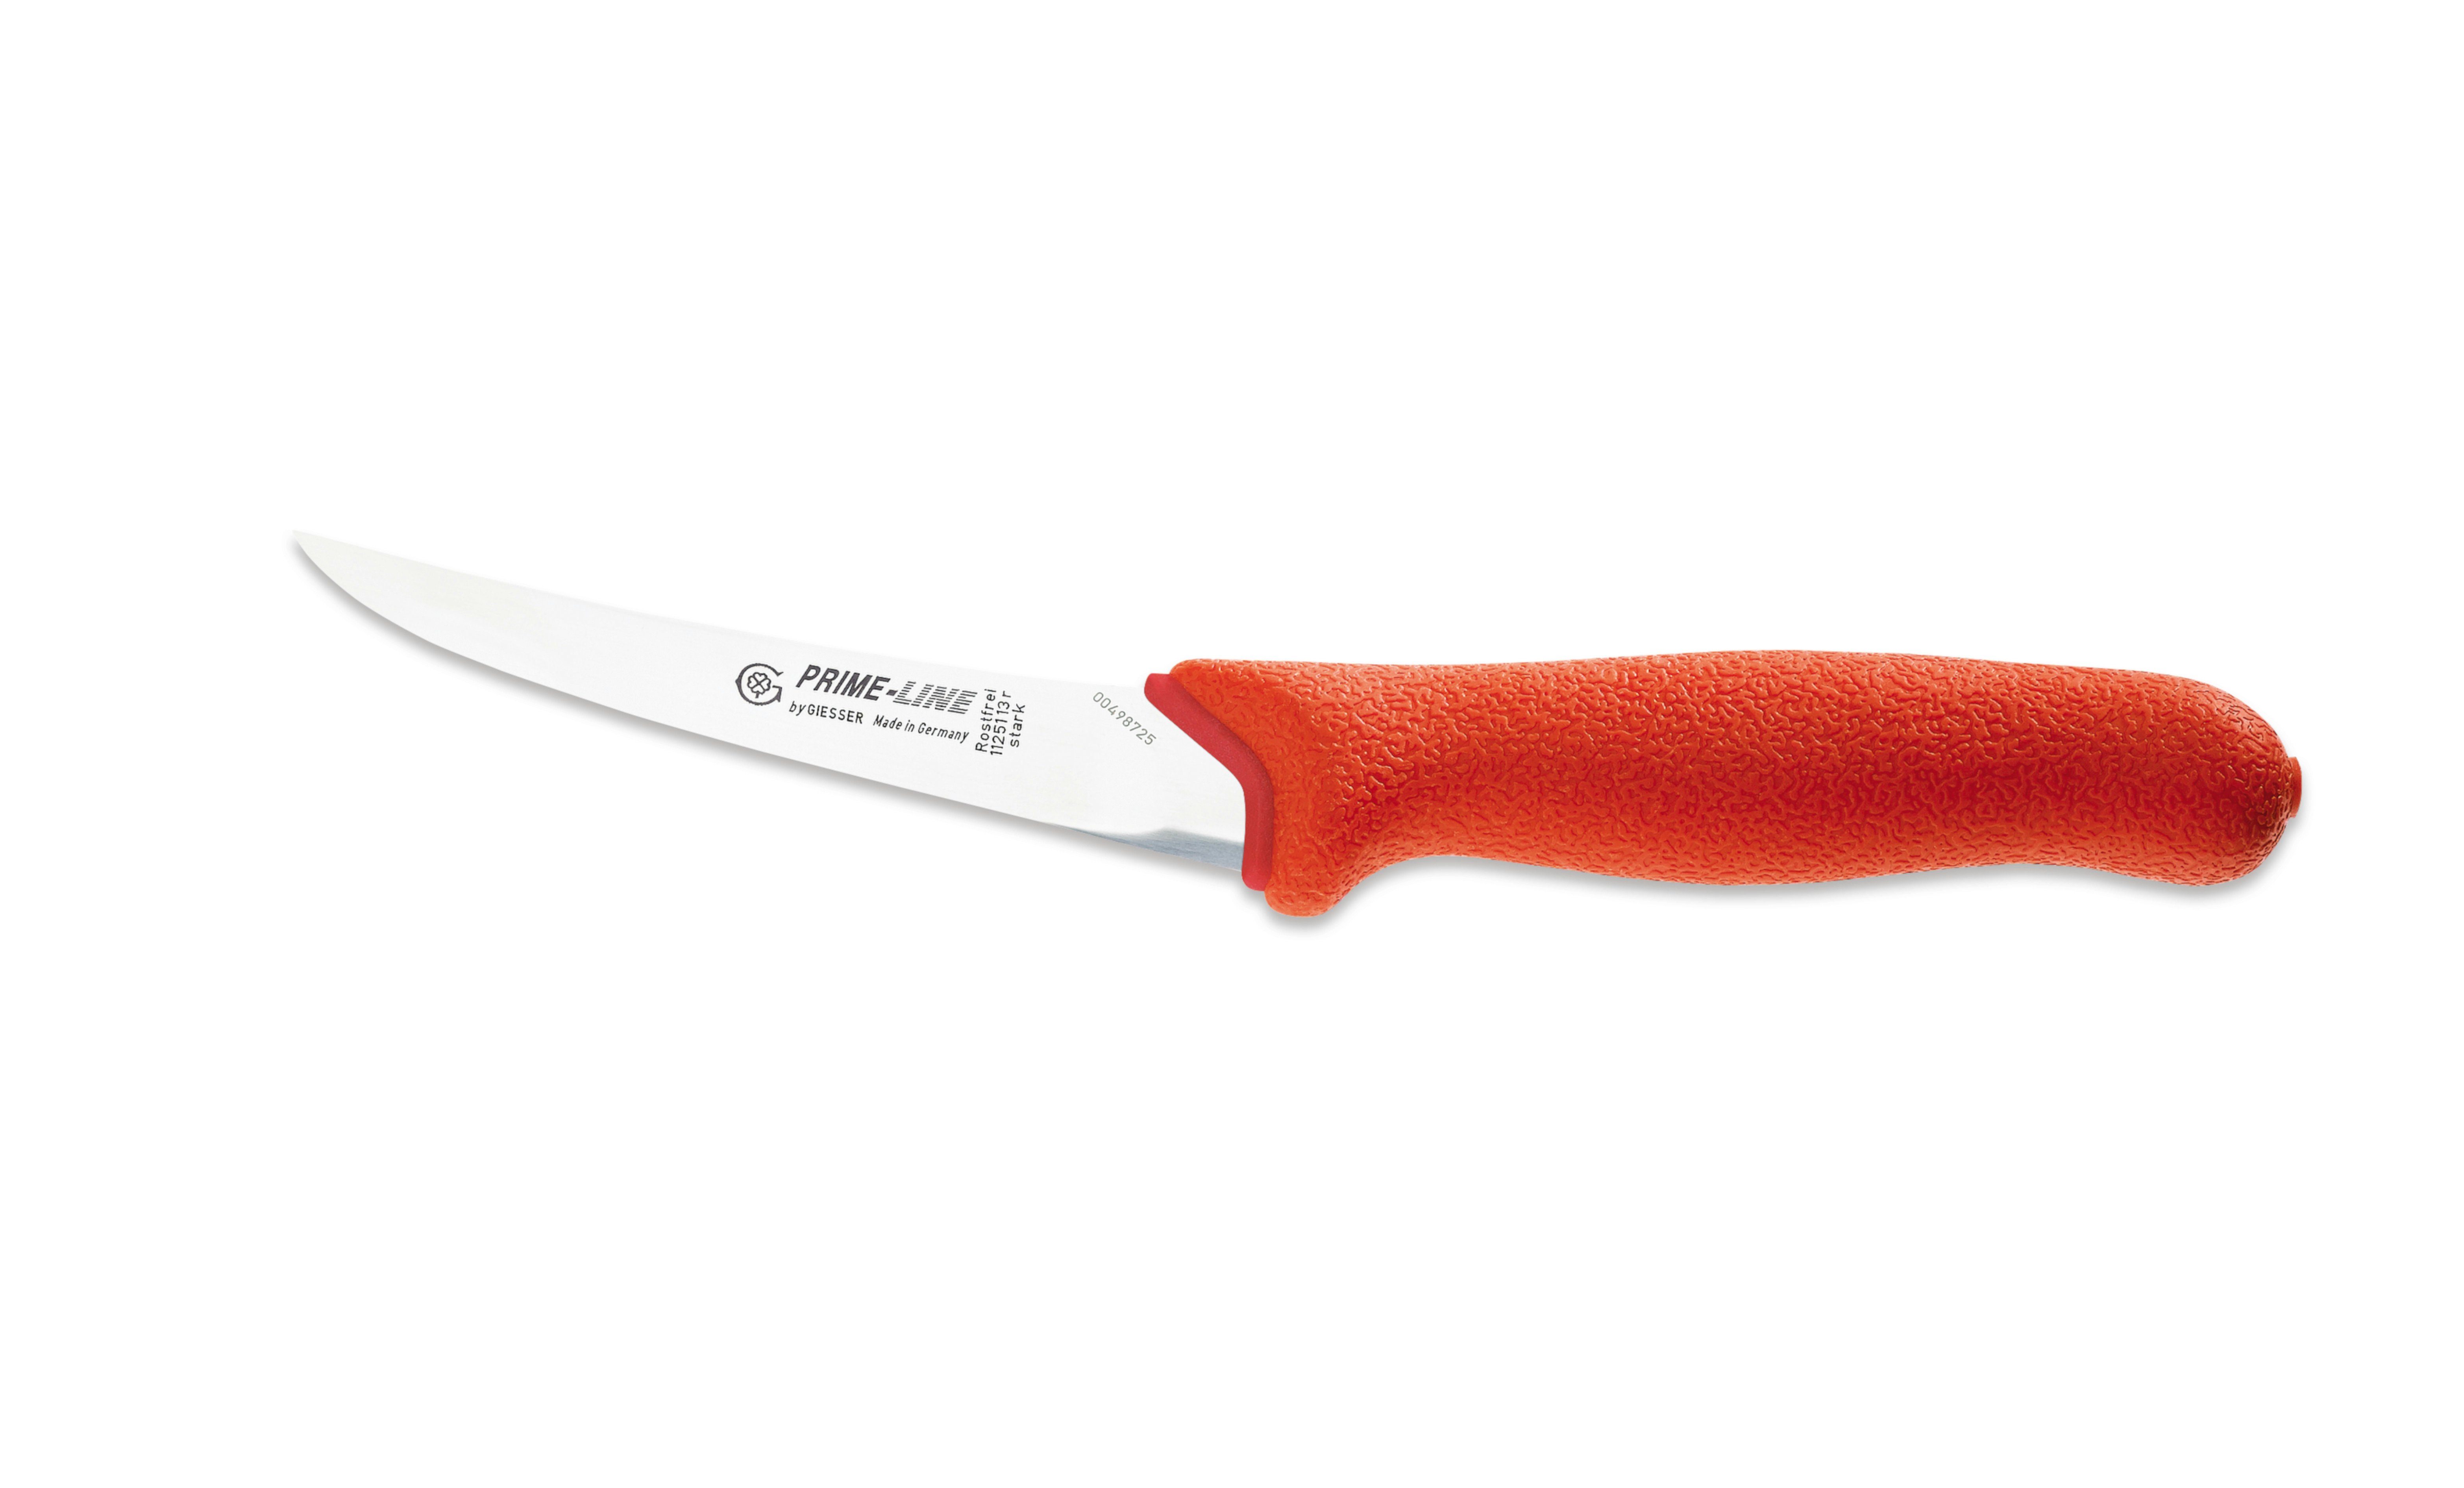 rot 11250 Fleischermesser Messer weicher Griff Ausbeinmesser Giesser 13/15, rutschfest, PrimeLine,